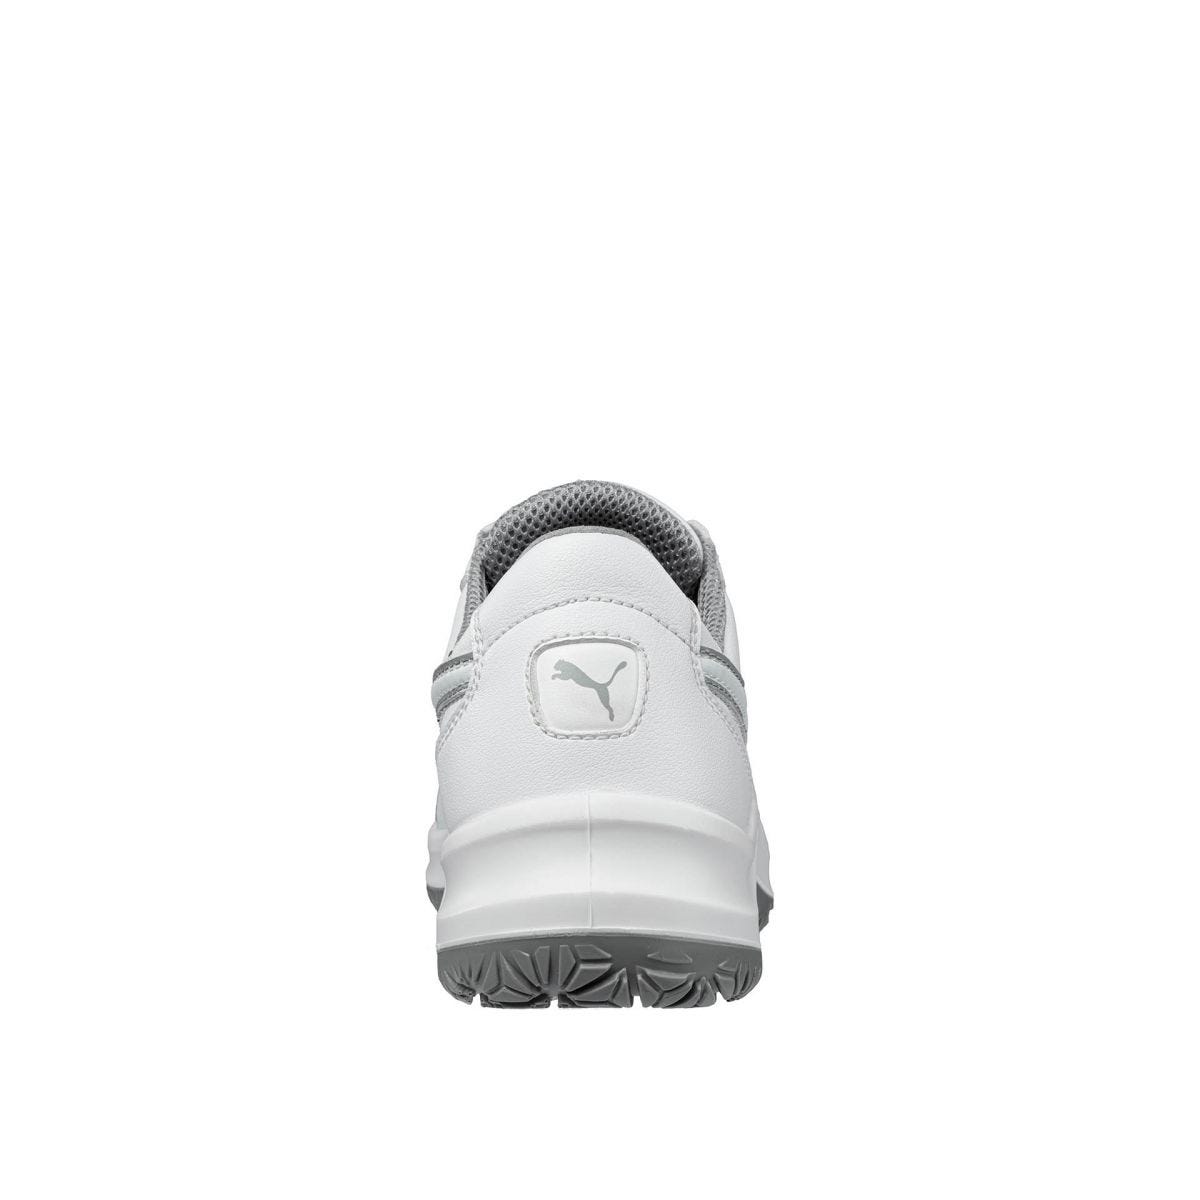 Chaussures de sécurité Clarity low S2 SRC - Puma - Taille 46 1